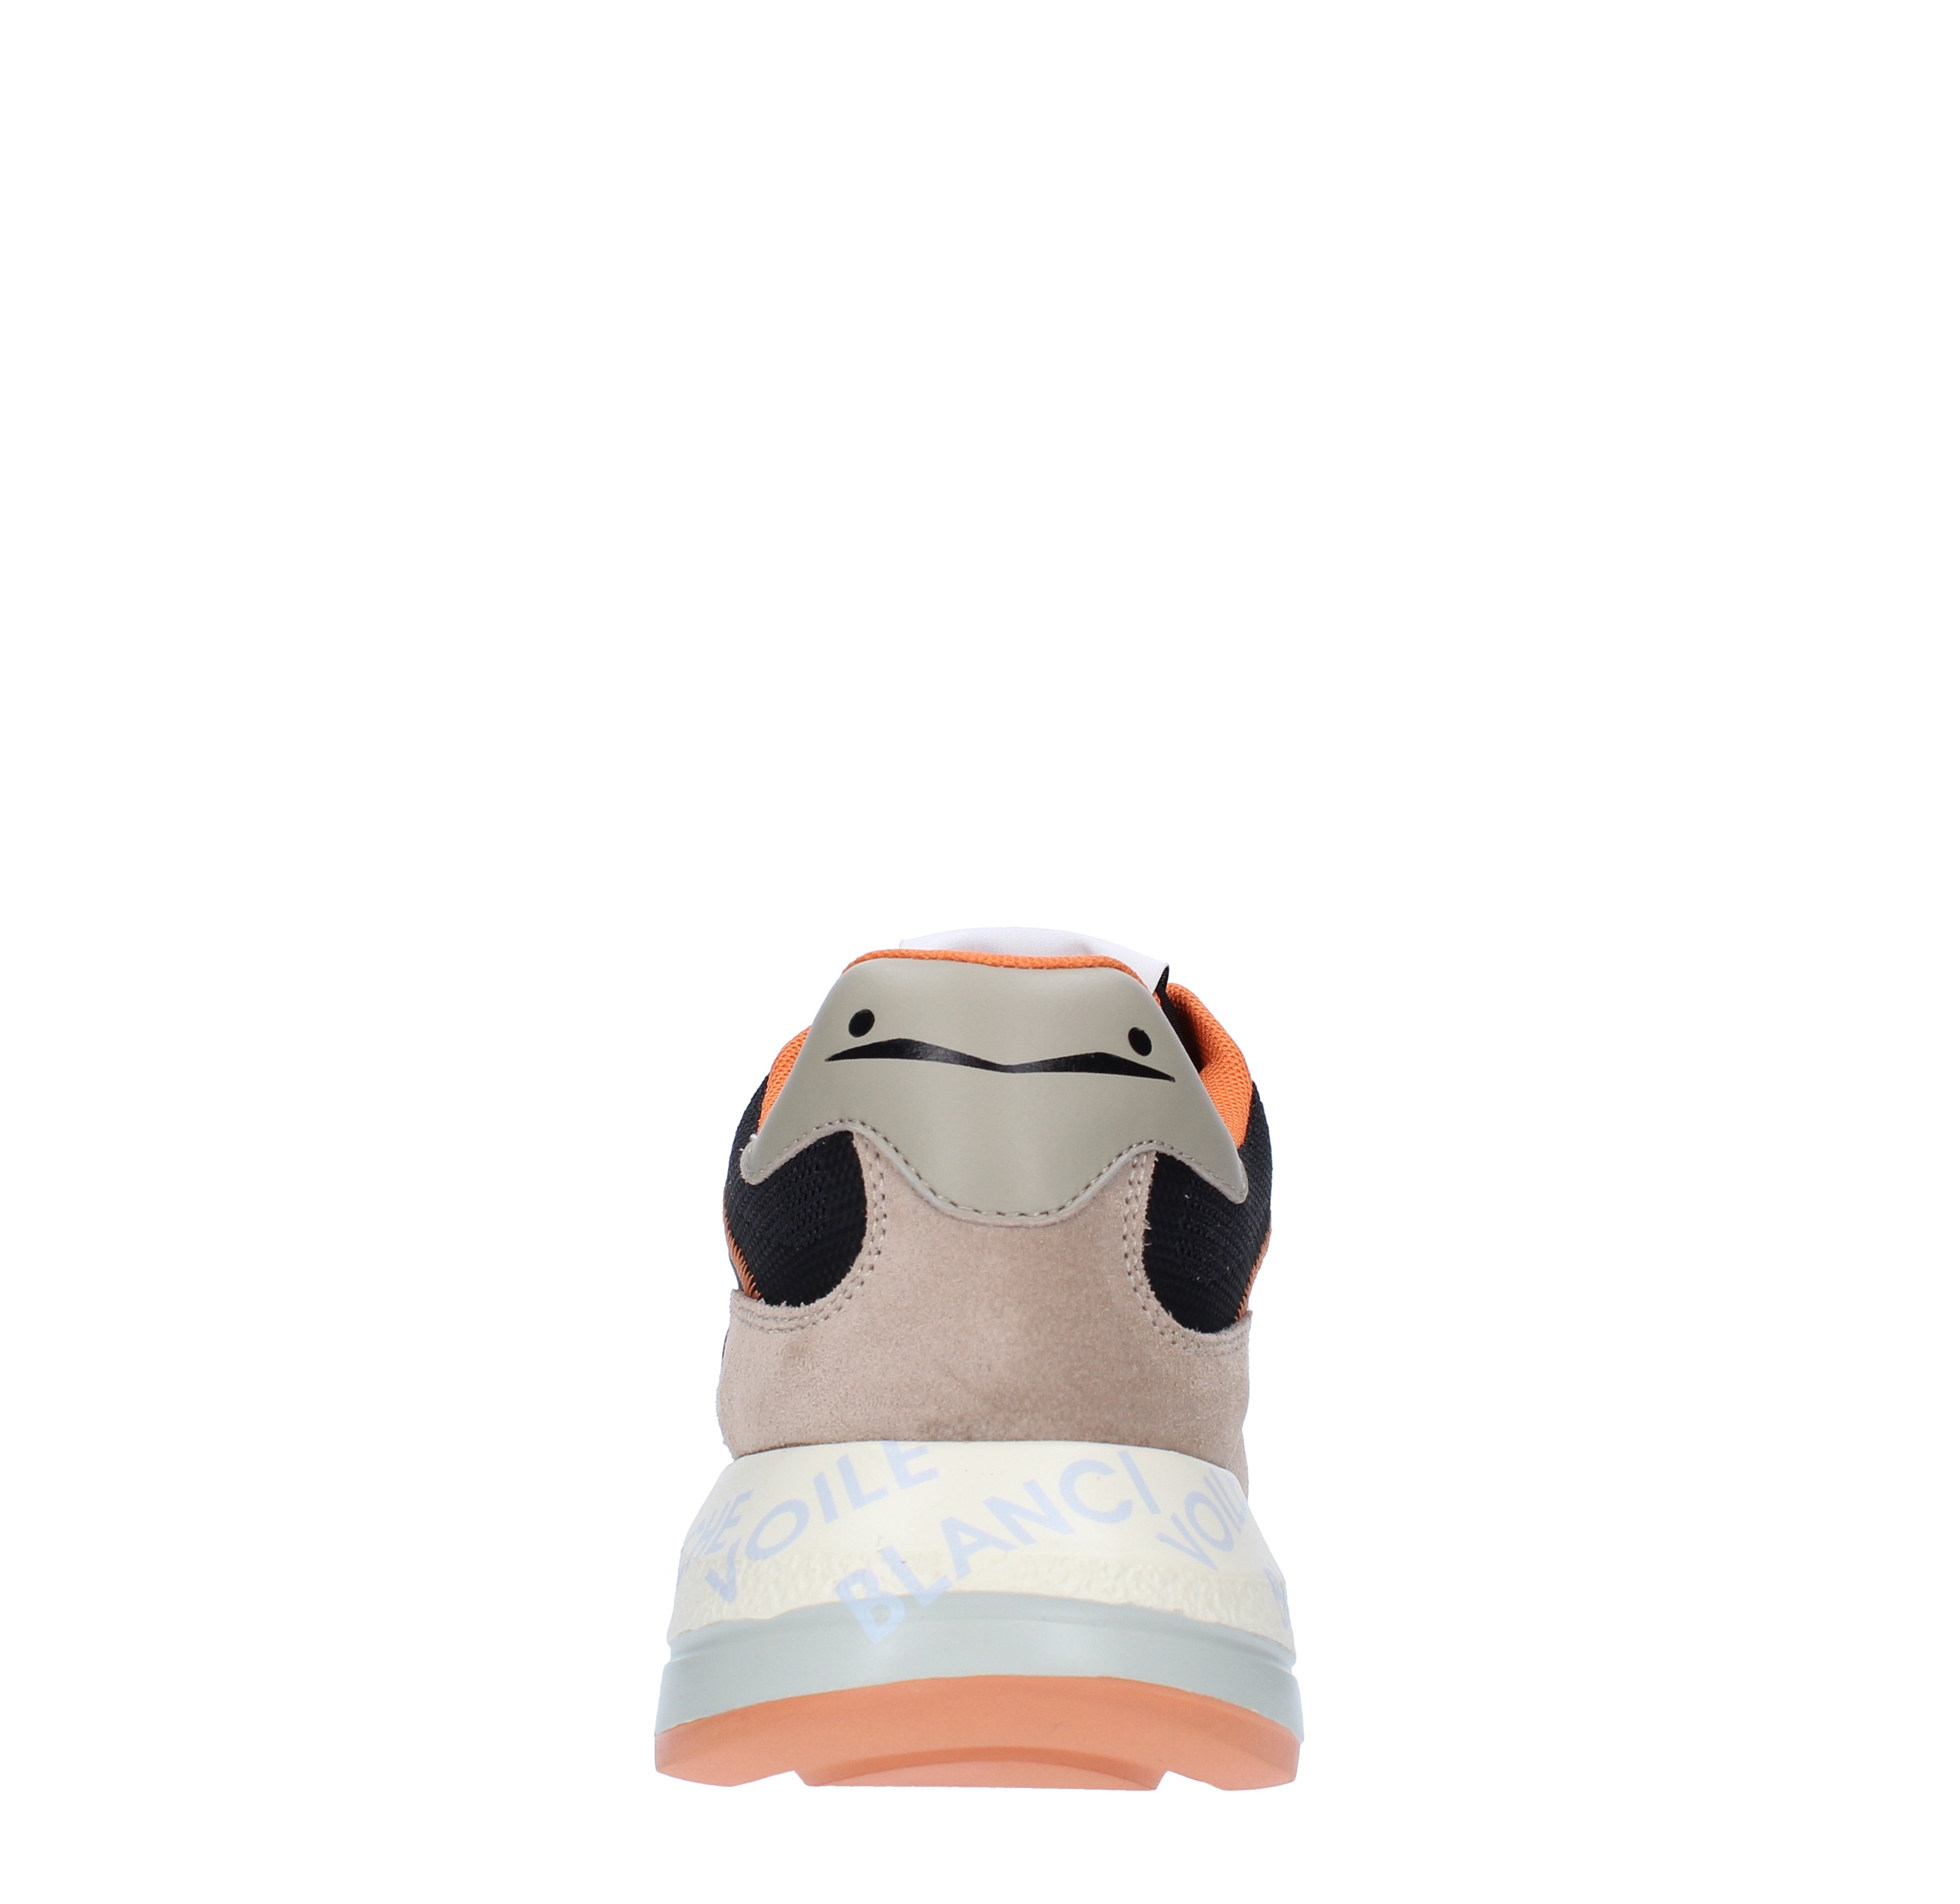 Sneakers VOILE BLANCHE modello SHINE in camoscio pelle e tessuto - VOILE  BLANCHE - Ginevra calzature